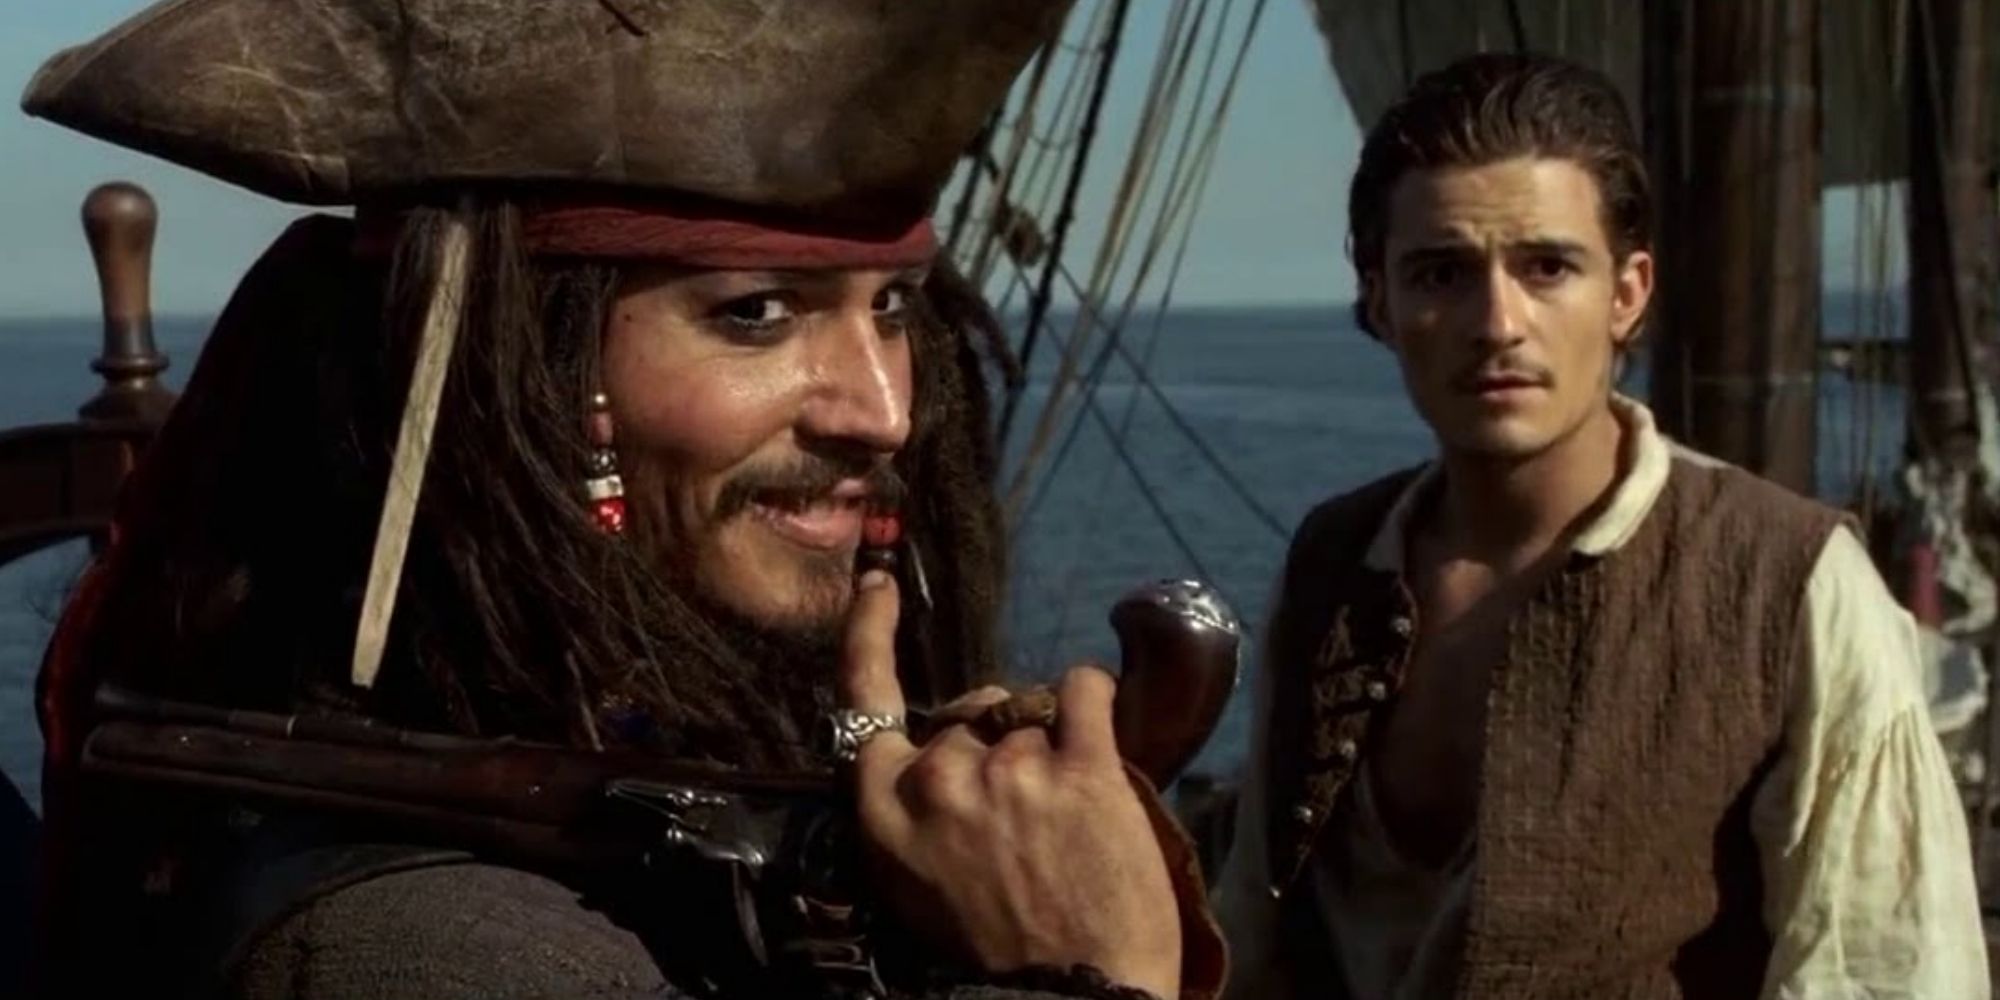 Jack Sparrow memegang pistol di samping Will Turner dari 'Pirates of the Caribbean: The Curse of the Black Pearl'